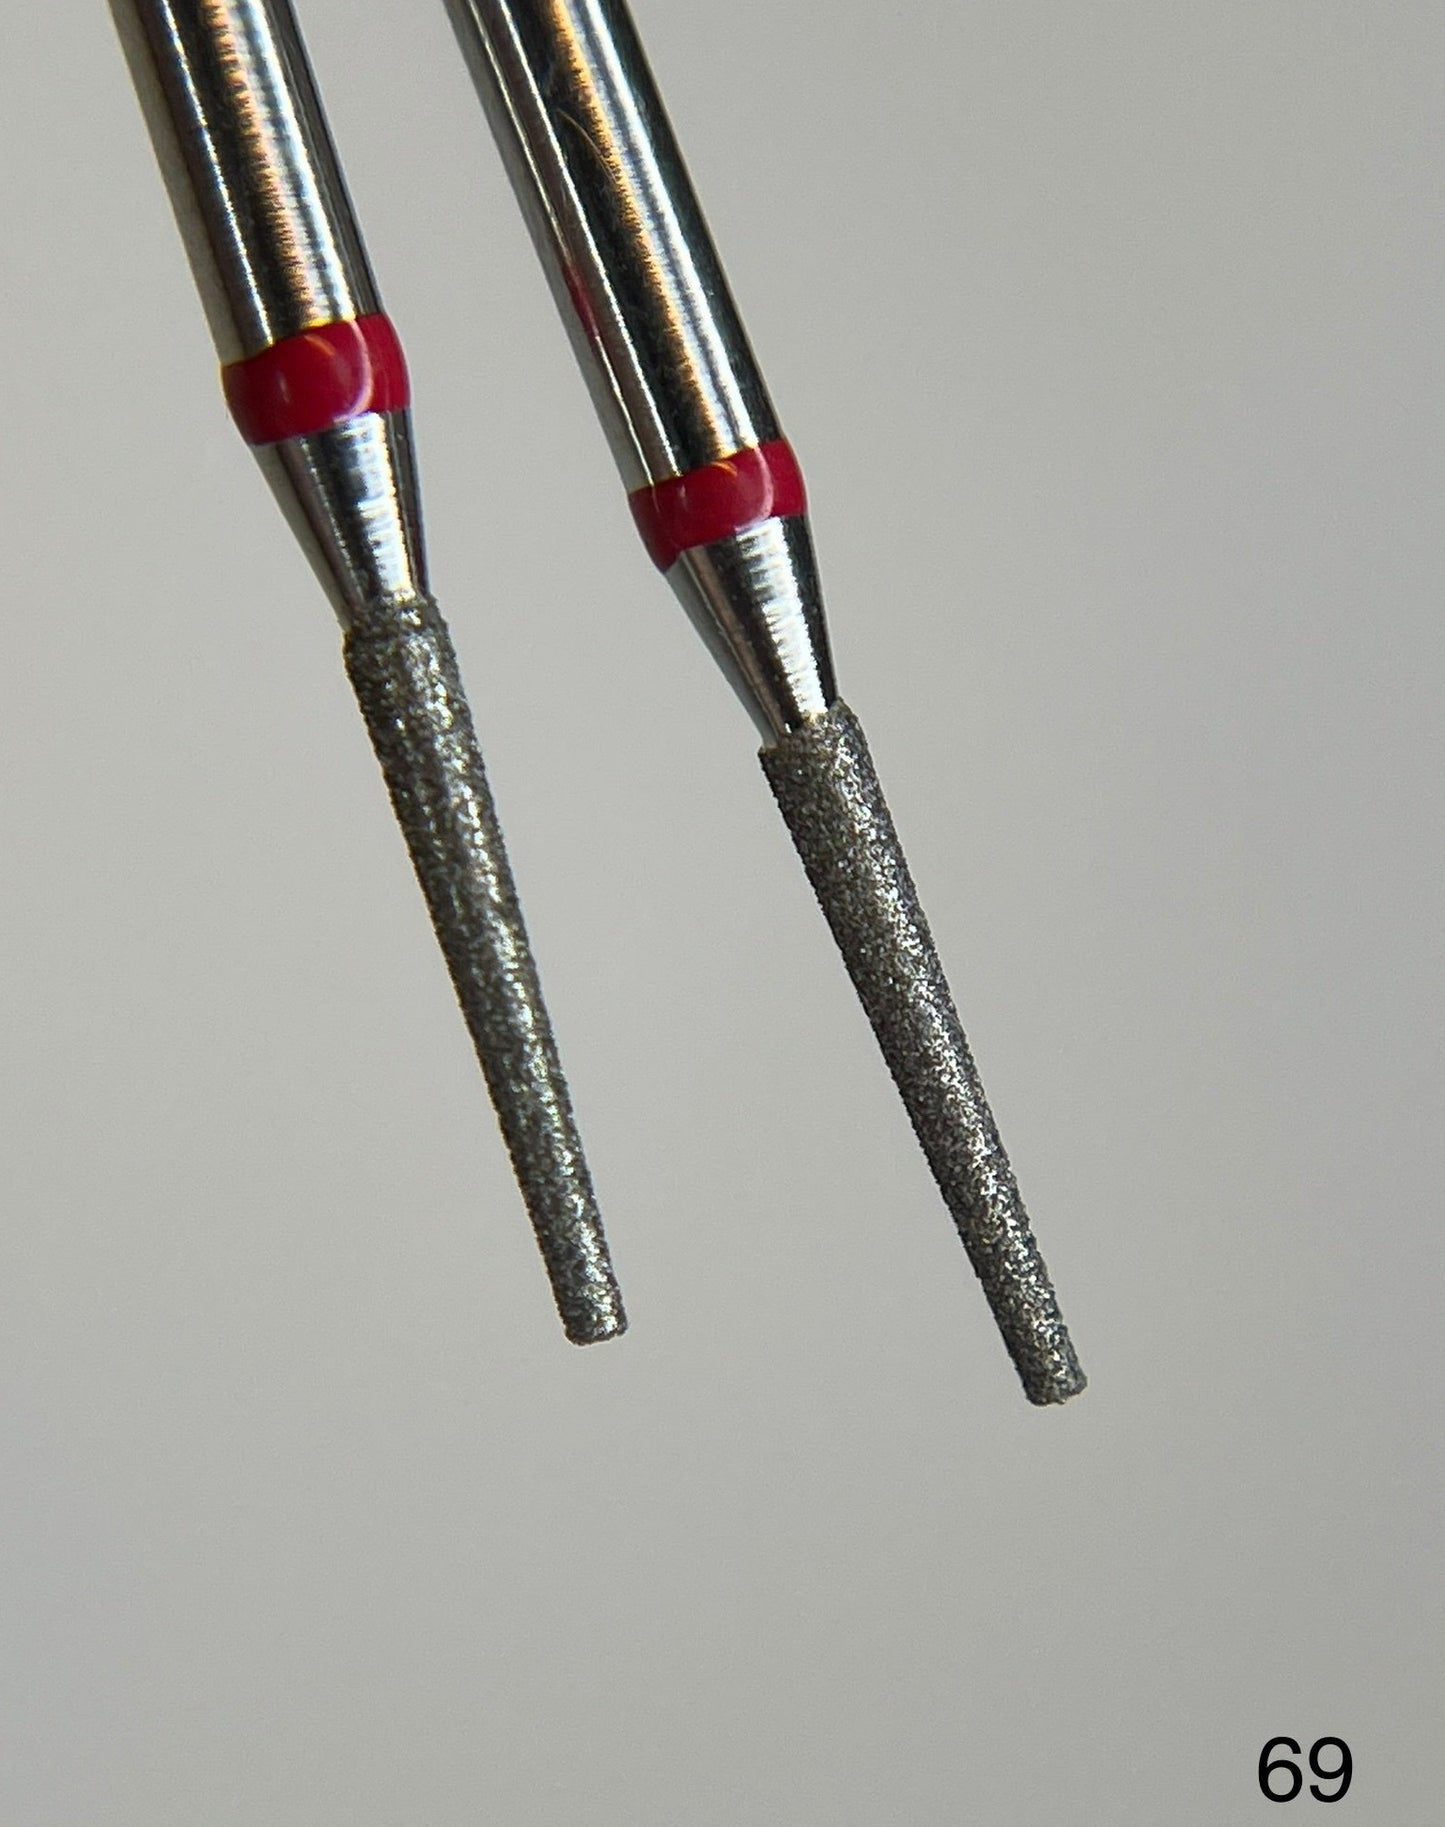 Diamond drill "Cone" 1.4mm